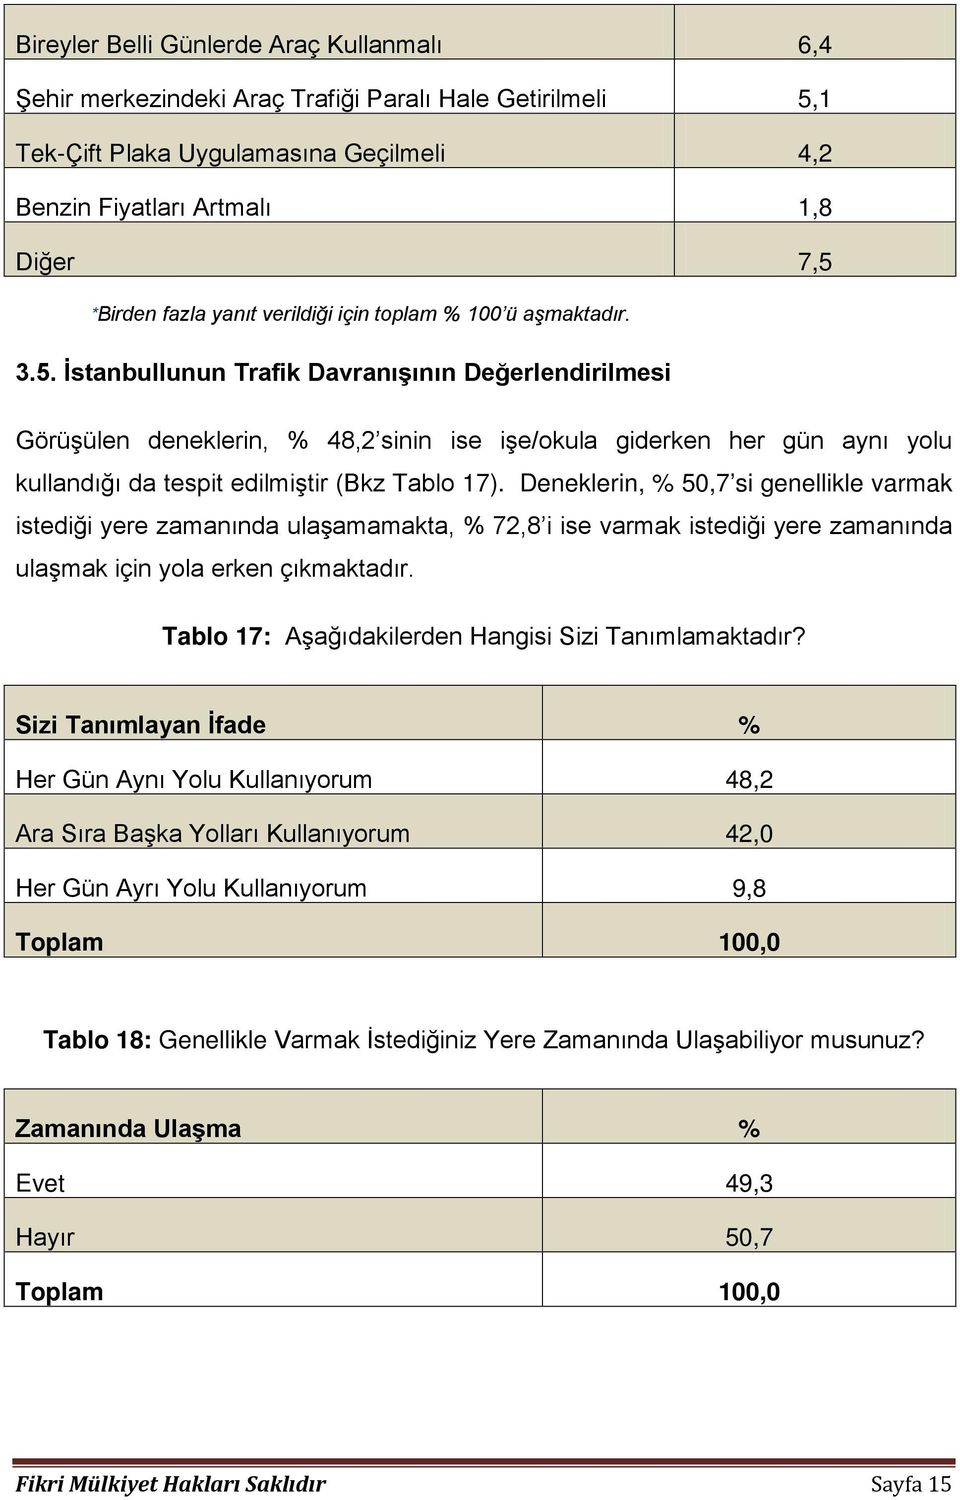 İstanbullunun Trafik Davranışının Değerlendirilmesi Görüşülen deneklerin, % 48,2 sinin ise işe/okula giderken her gün aynı yolu kullandığı da tespit edilmiştir (Bkz Tablo 17).